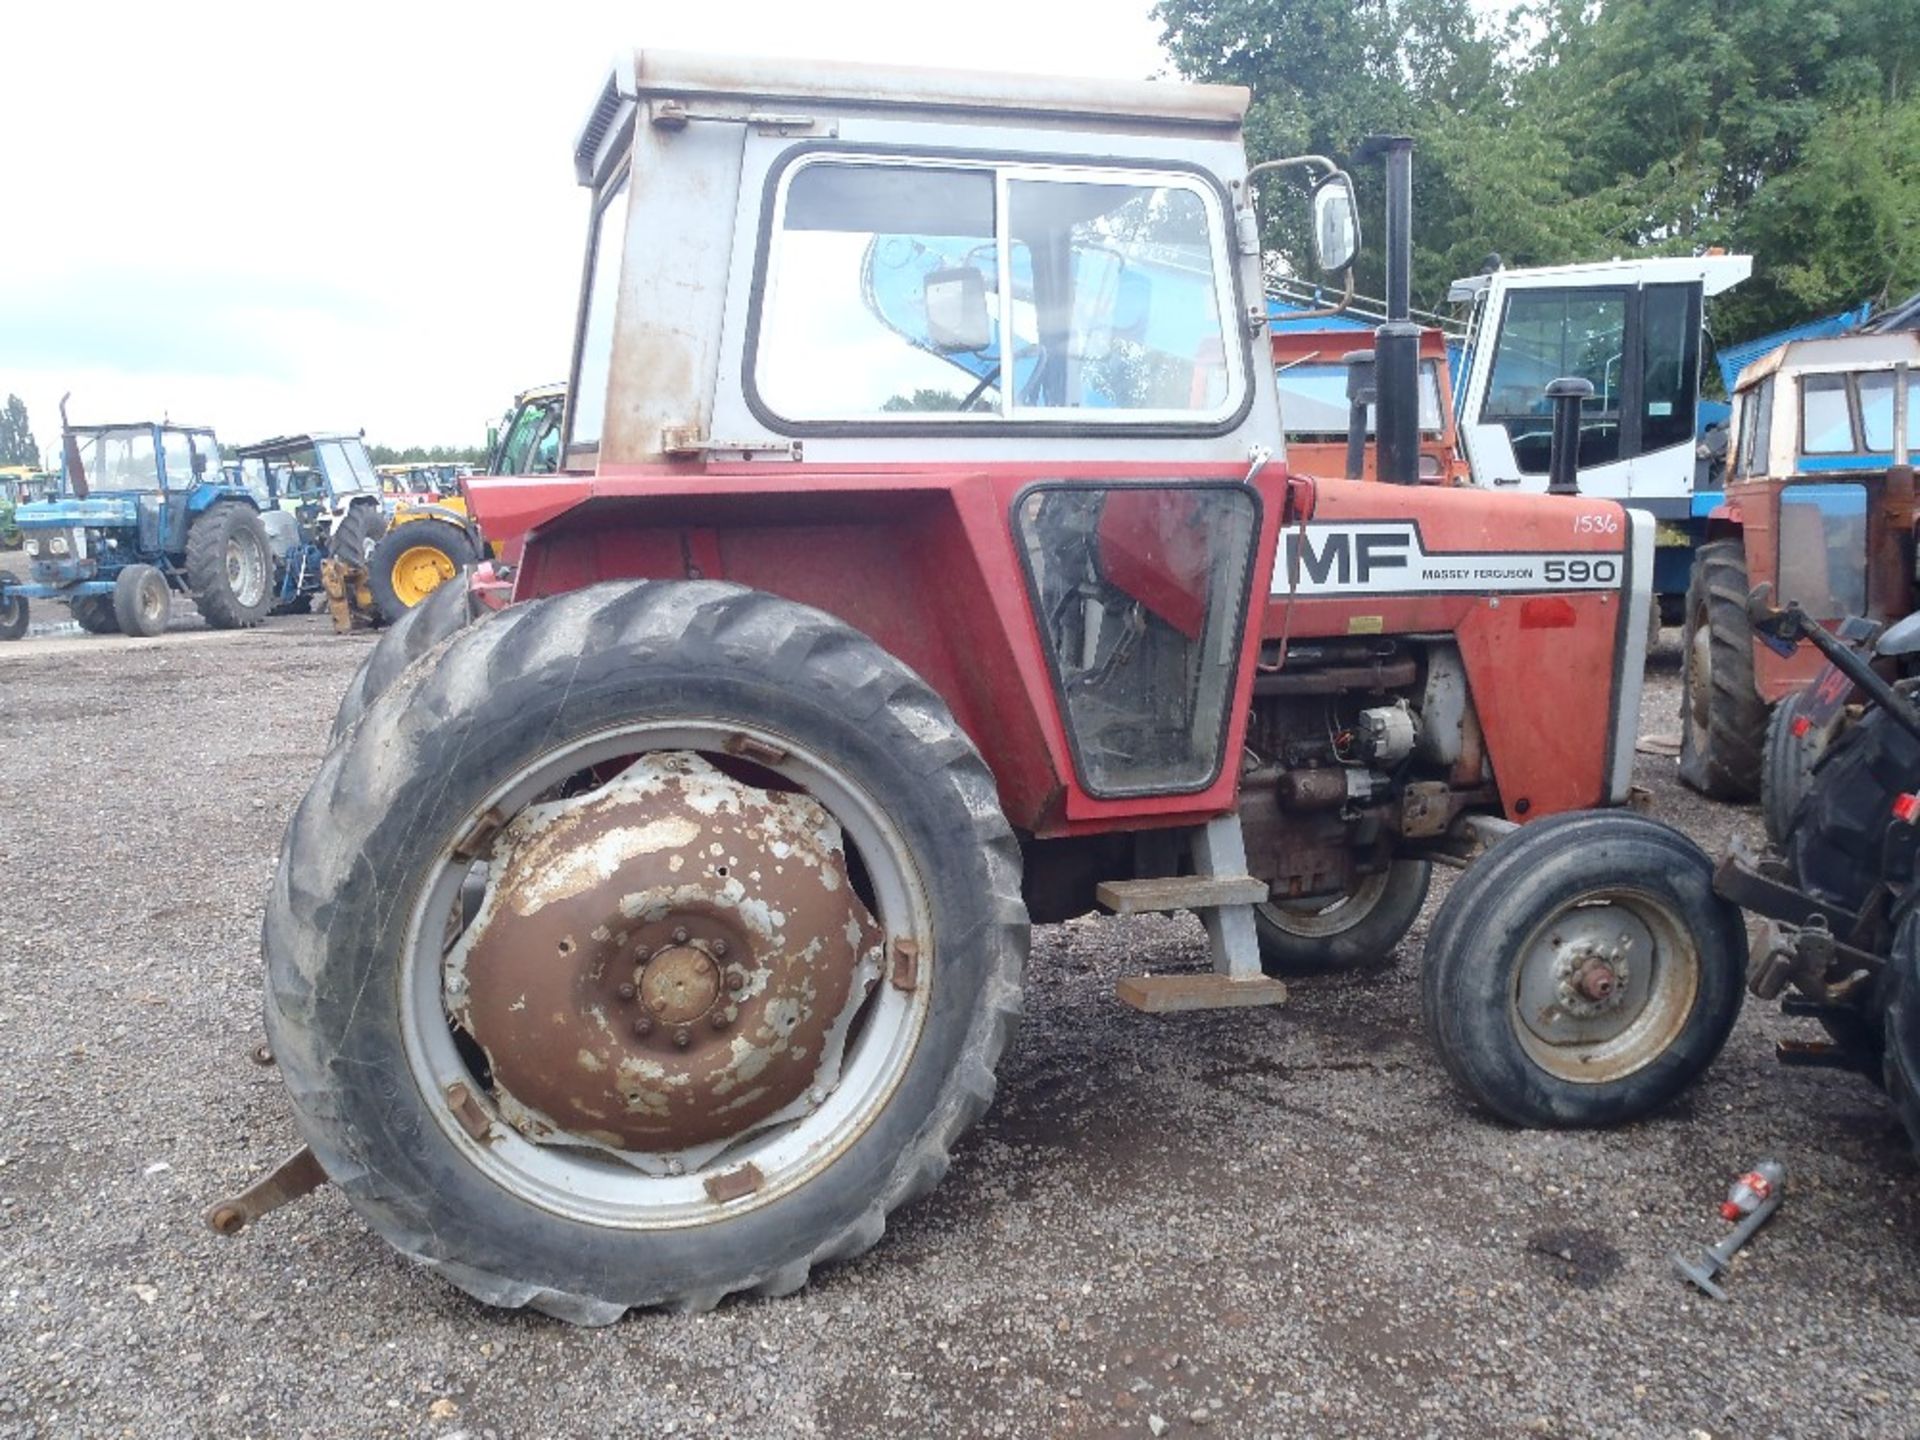 Massey Ferguson 590 2wd Tractor With 2 Door Cab.  Ser.No. 3983885 - Image 3 of 8